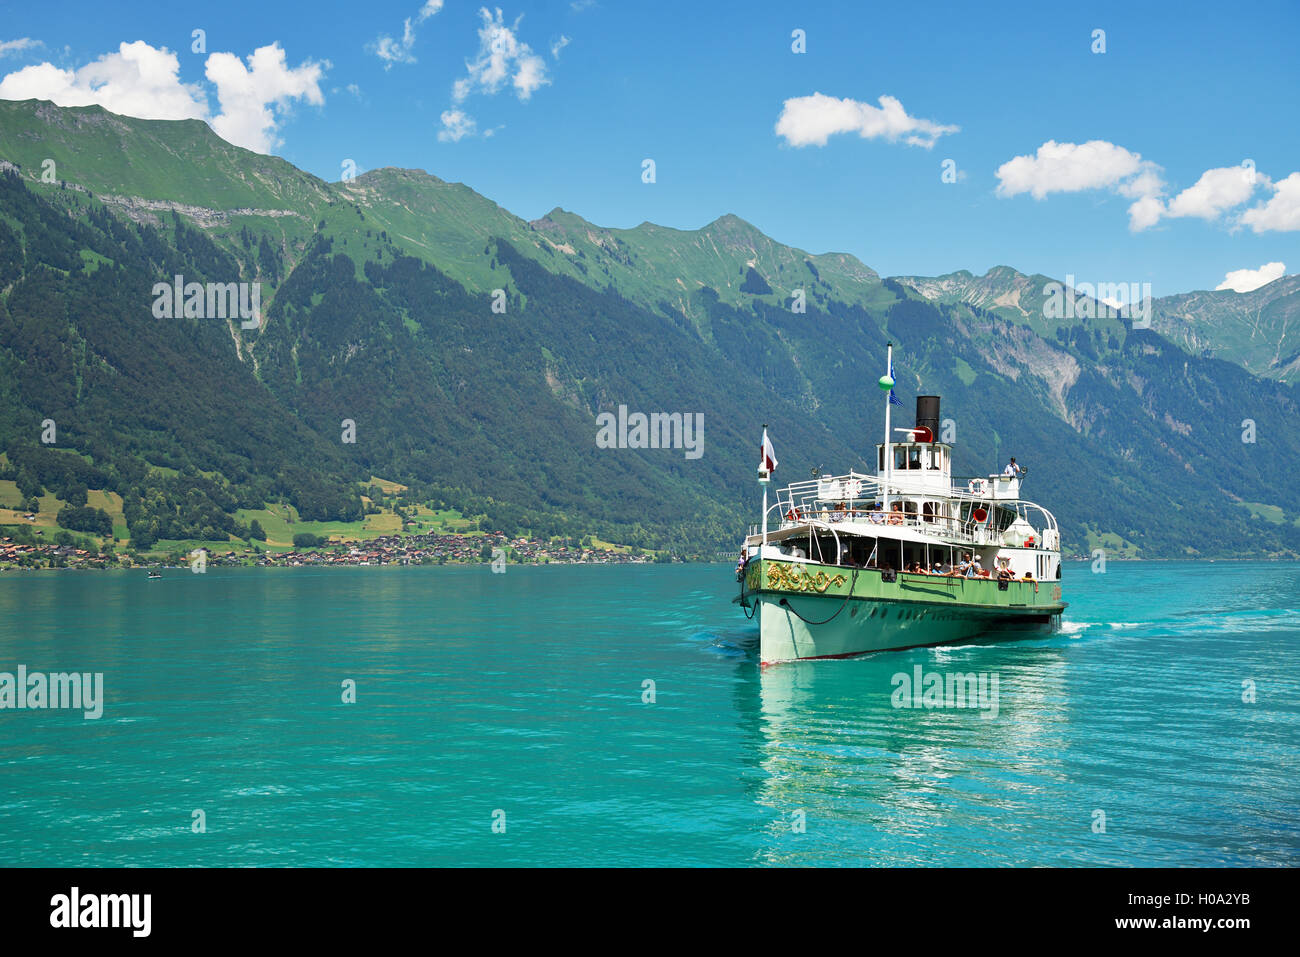 Steamboat sur Lötschberg Le lac de Brienz, Interlaken Ost, Canton de Berne, Suisse Banque D'Images